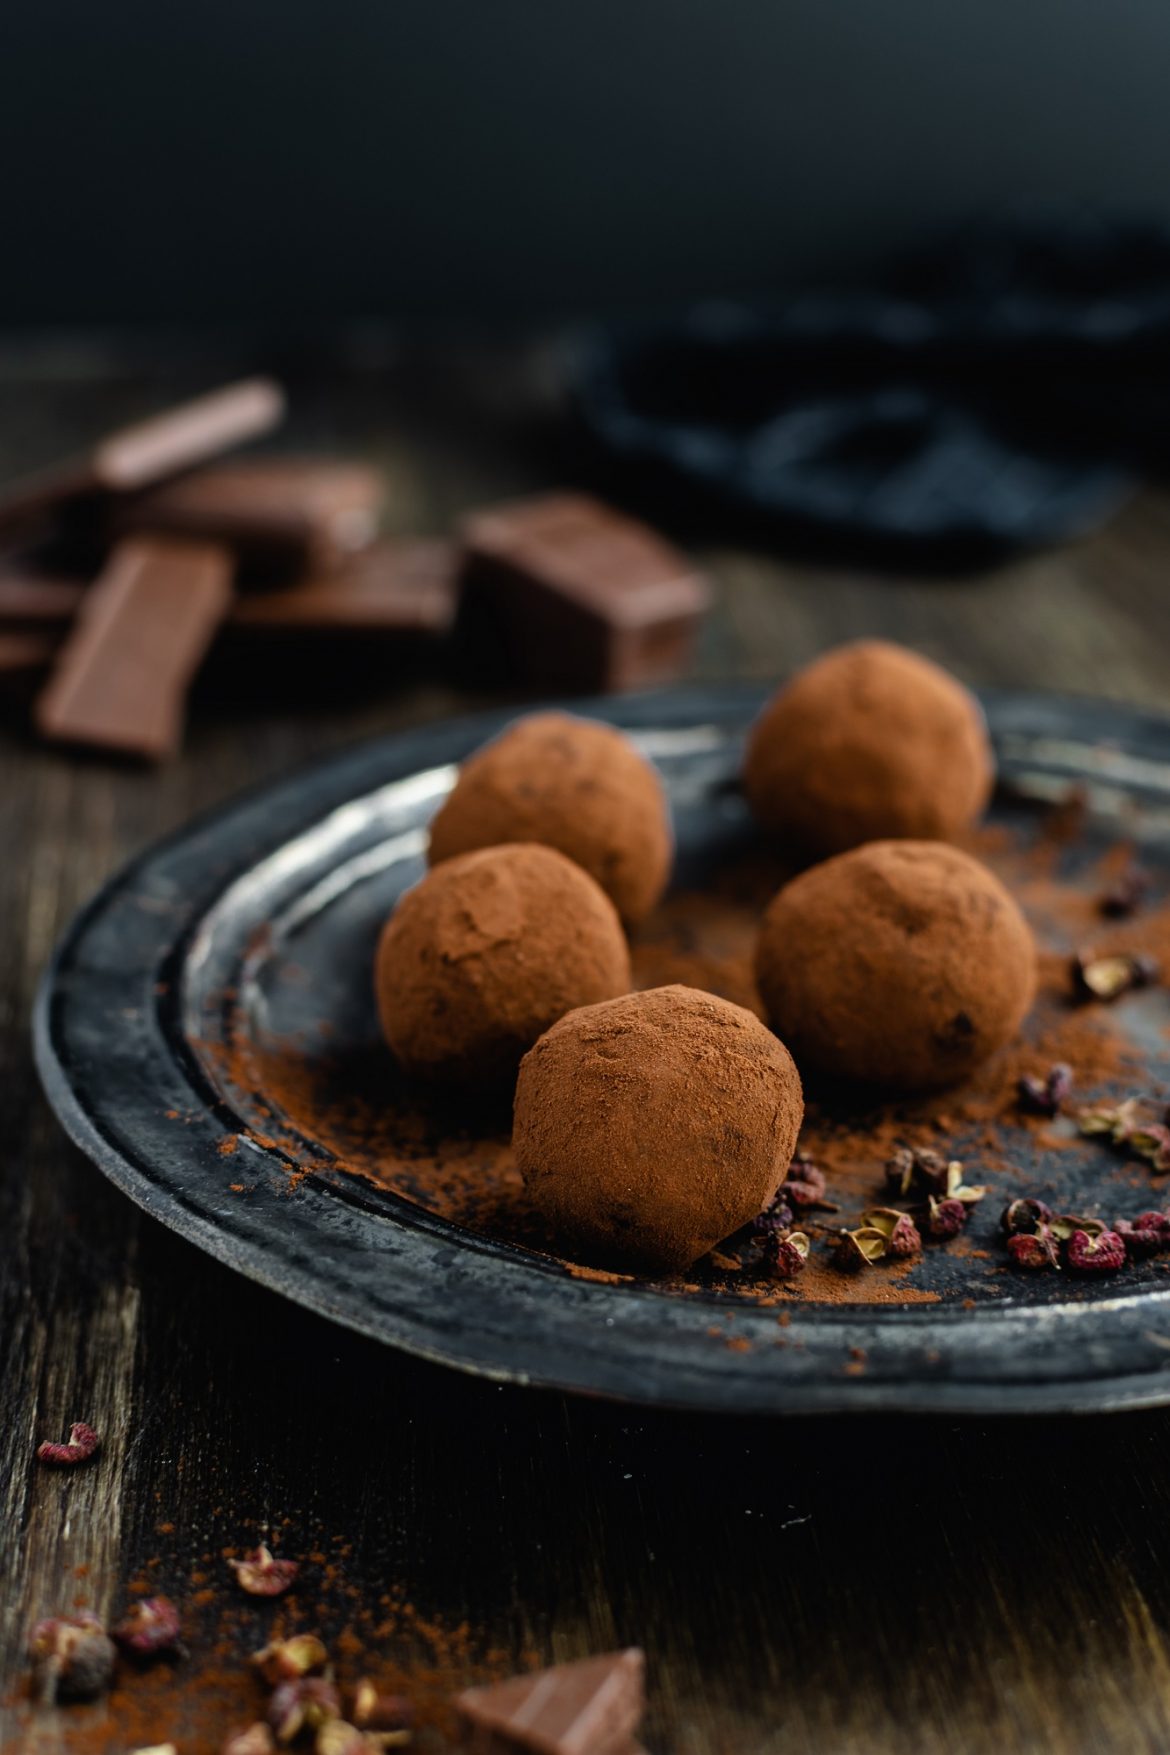 منتجع فاكارو المالديف يقدم تجربة استثنائية لعشاق الشوكولاتة